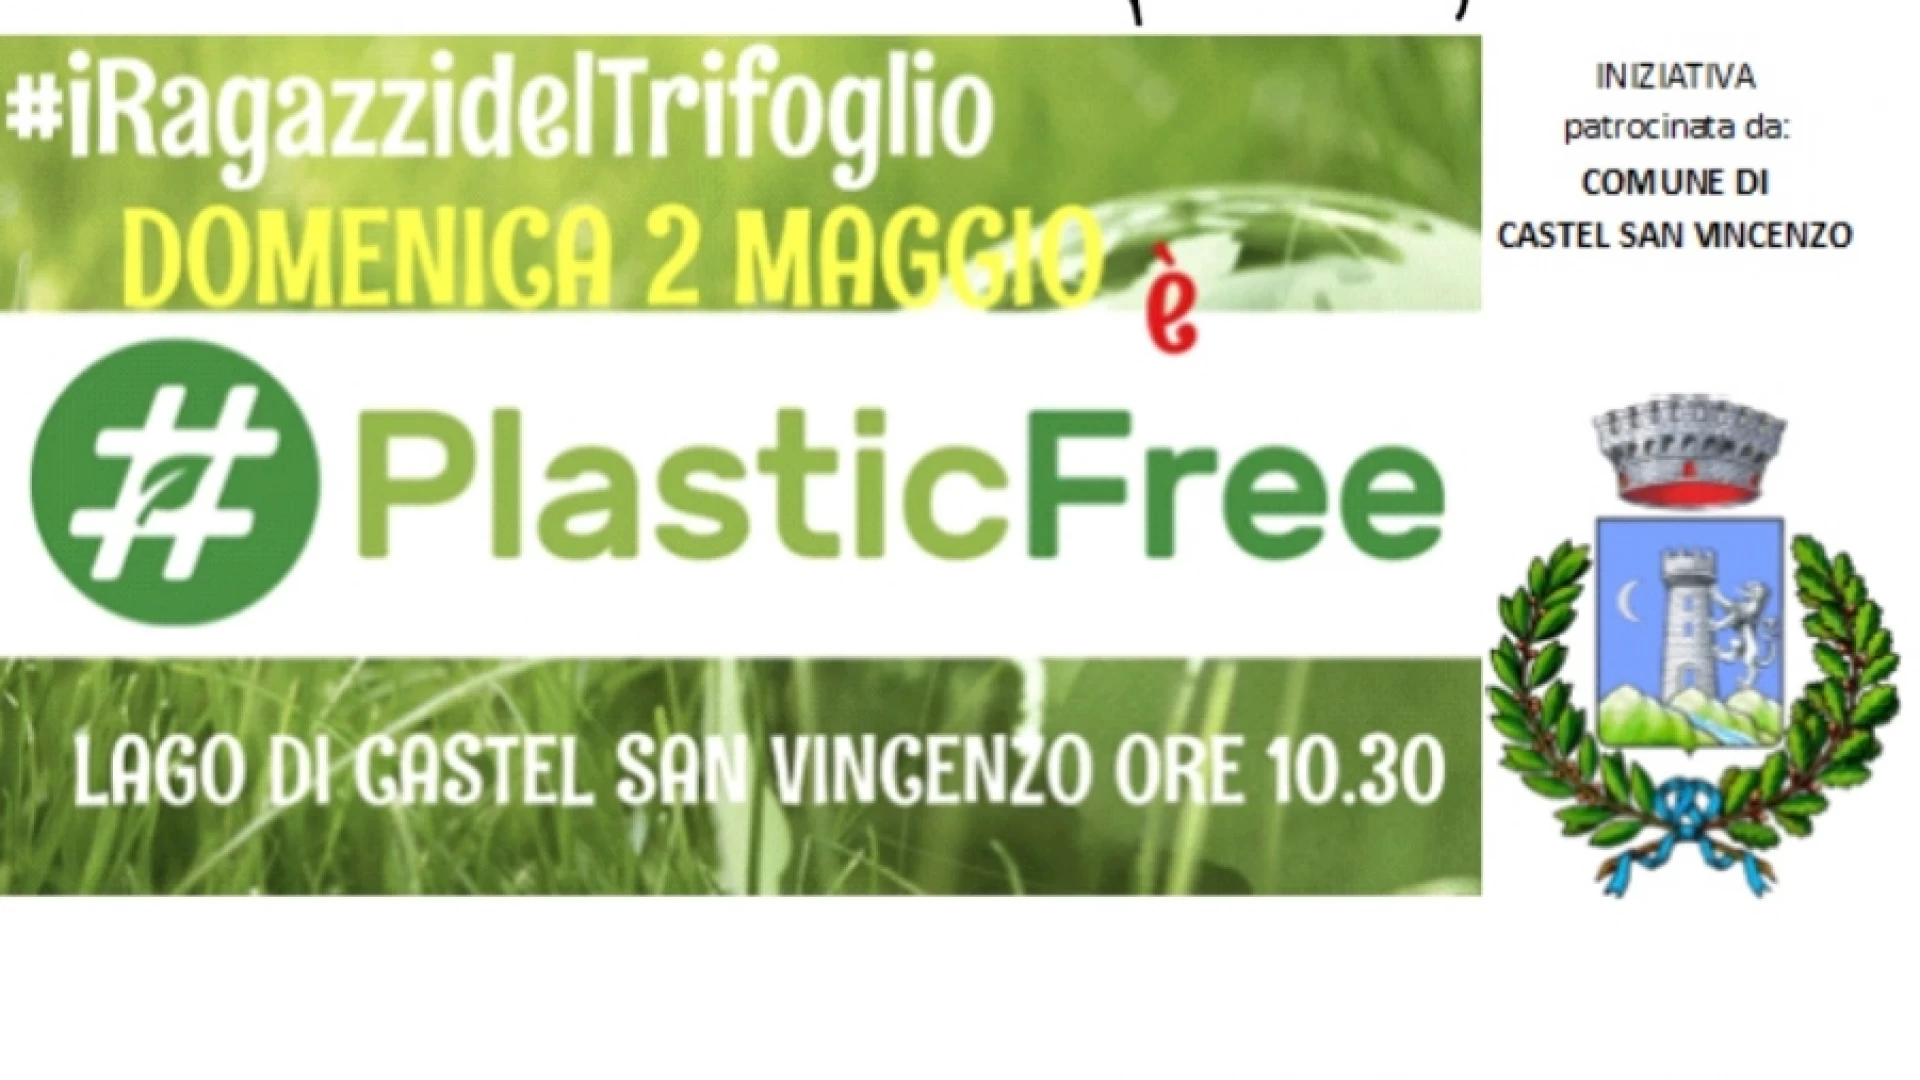 Domenica 2 maggio Plastic Free per i ragazzi del Trifoglio sul lago di Castel San Vincenzo.